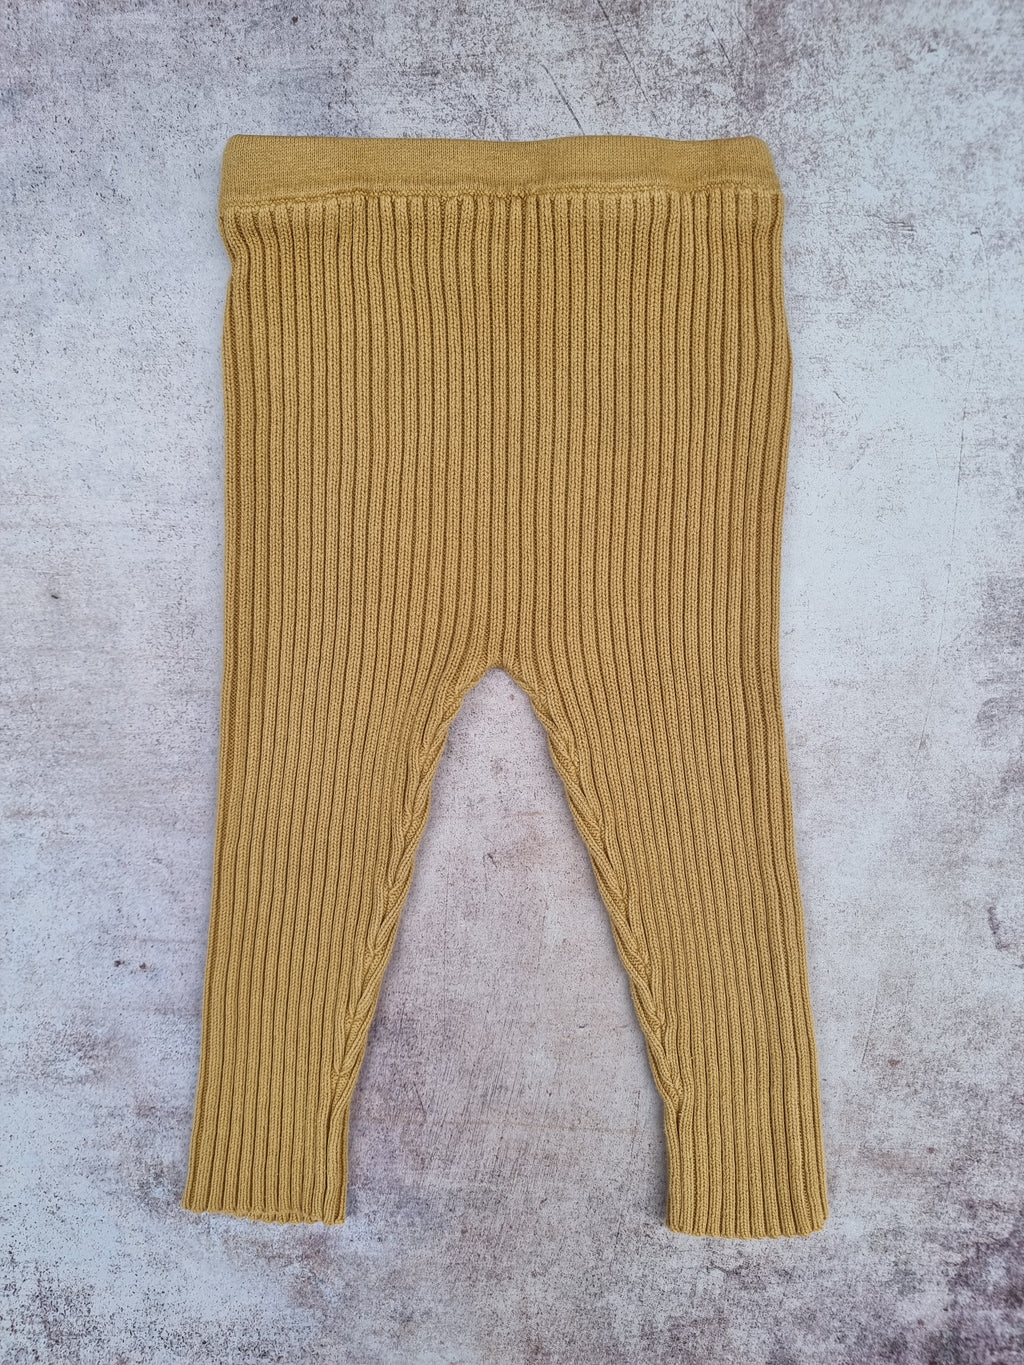 THRIFT Frankie Jones Mustard Knit leggings | Children of the Wild